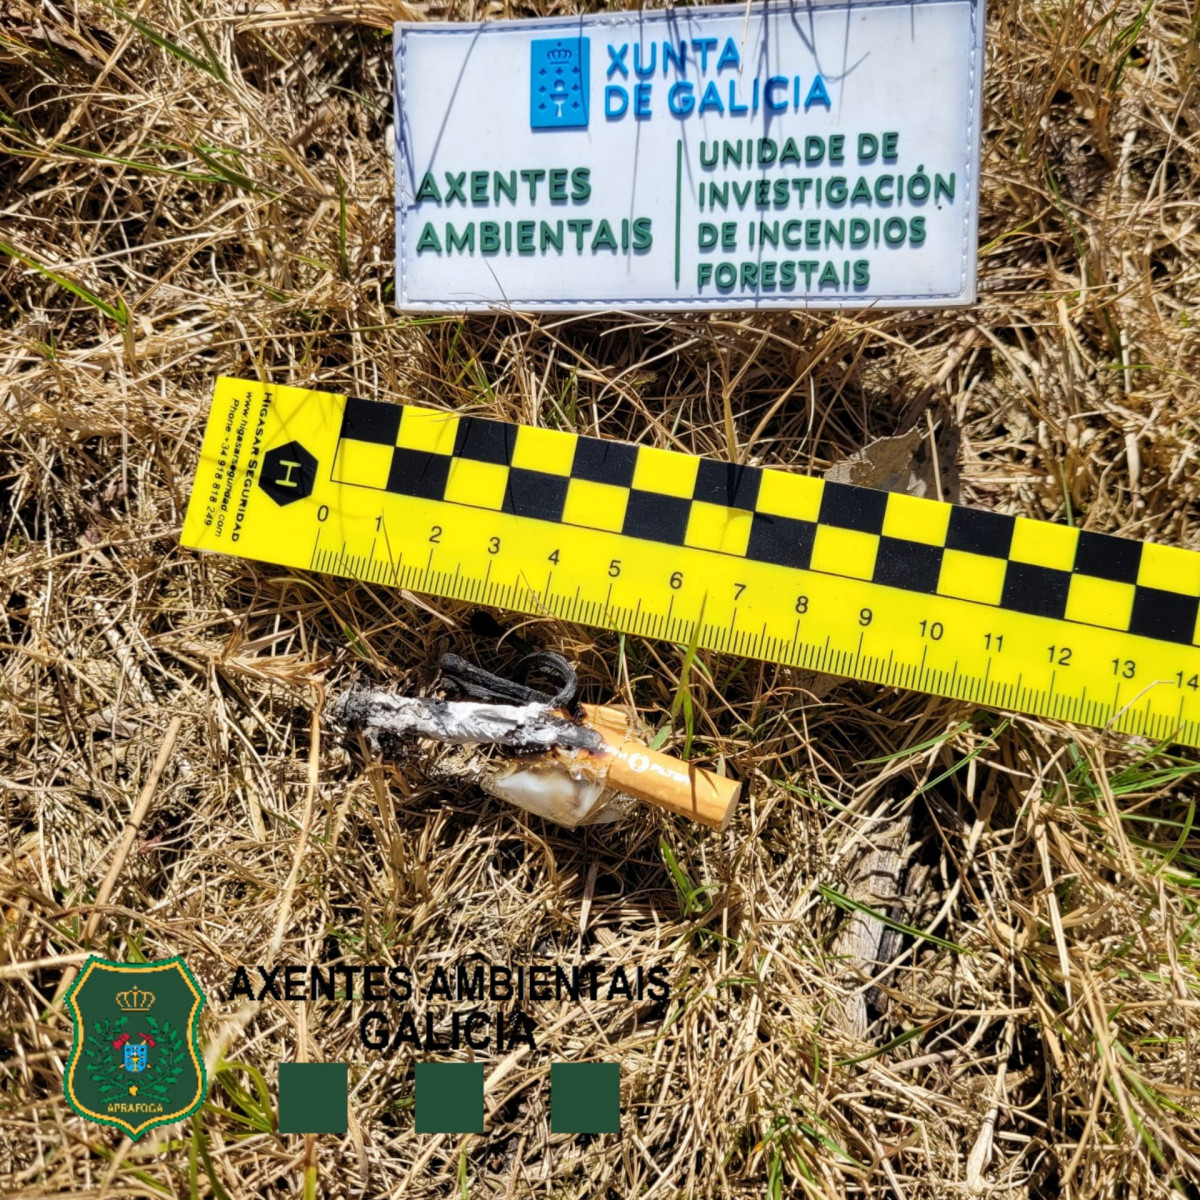 Artefacto incendiario en un conato extinguido encontrado por Axentes Ambientais da UIFO da Xunta